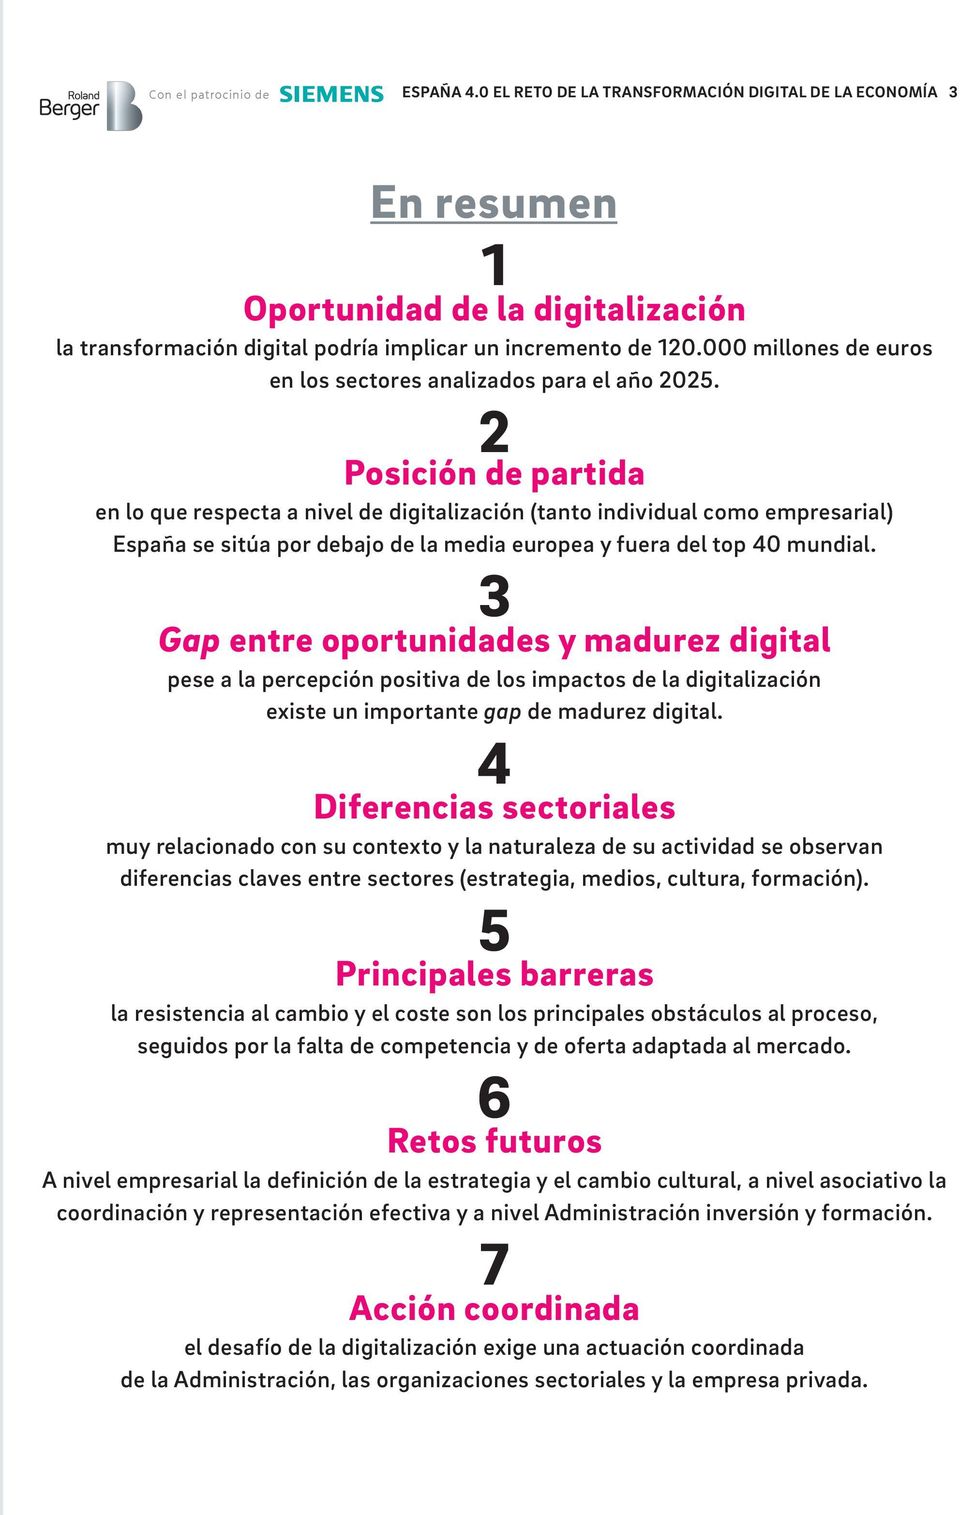 2 Posición de partida en lo que respecta a nivel de digitalización (tanto individual como empresarial) España se sitúa por debajo de la media europea y fuera del top 40 mundial.